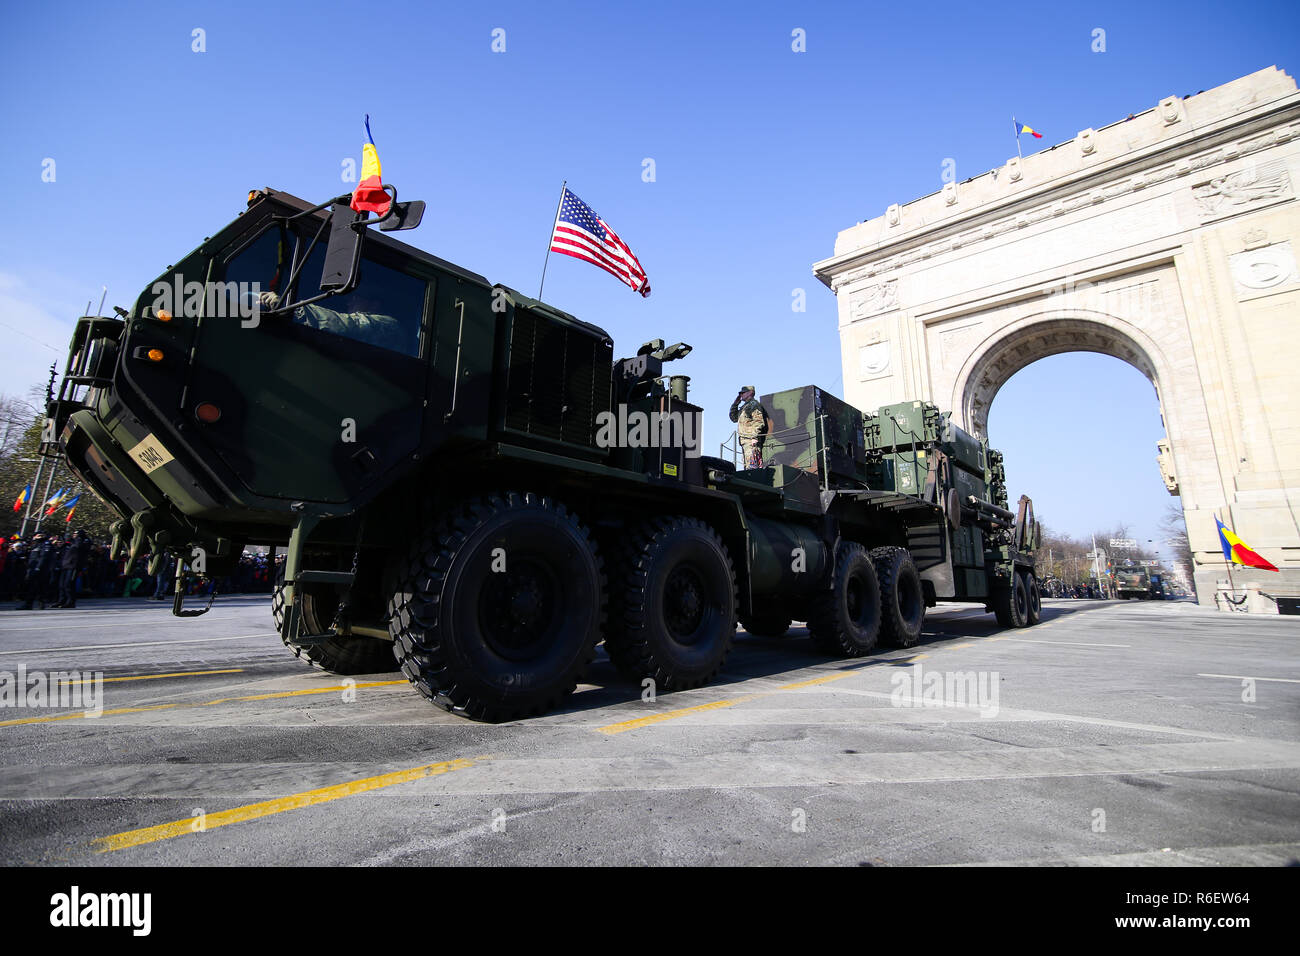 Bucarest, Roumanie - décembre 1, 2018 : Patriot PAC 3 + un missile sol-air (SAM) au niveau de la parade militaire de la fête nationale roumaine Banque D'Images